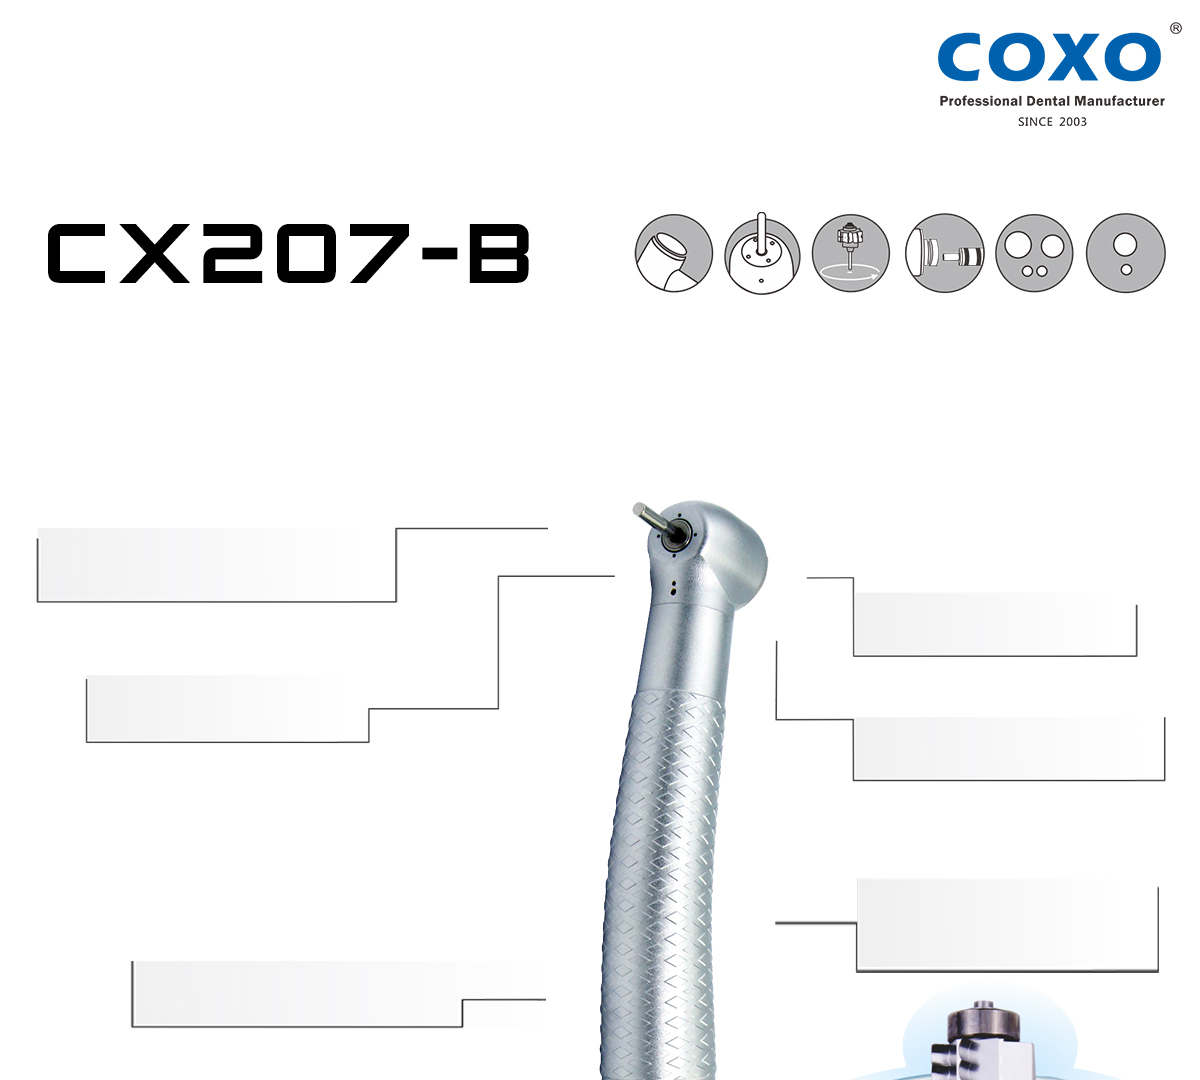 CX207-B